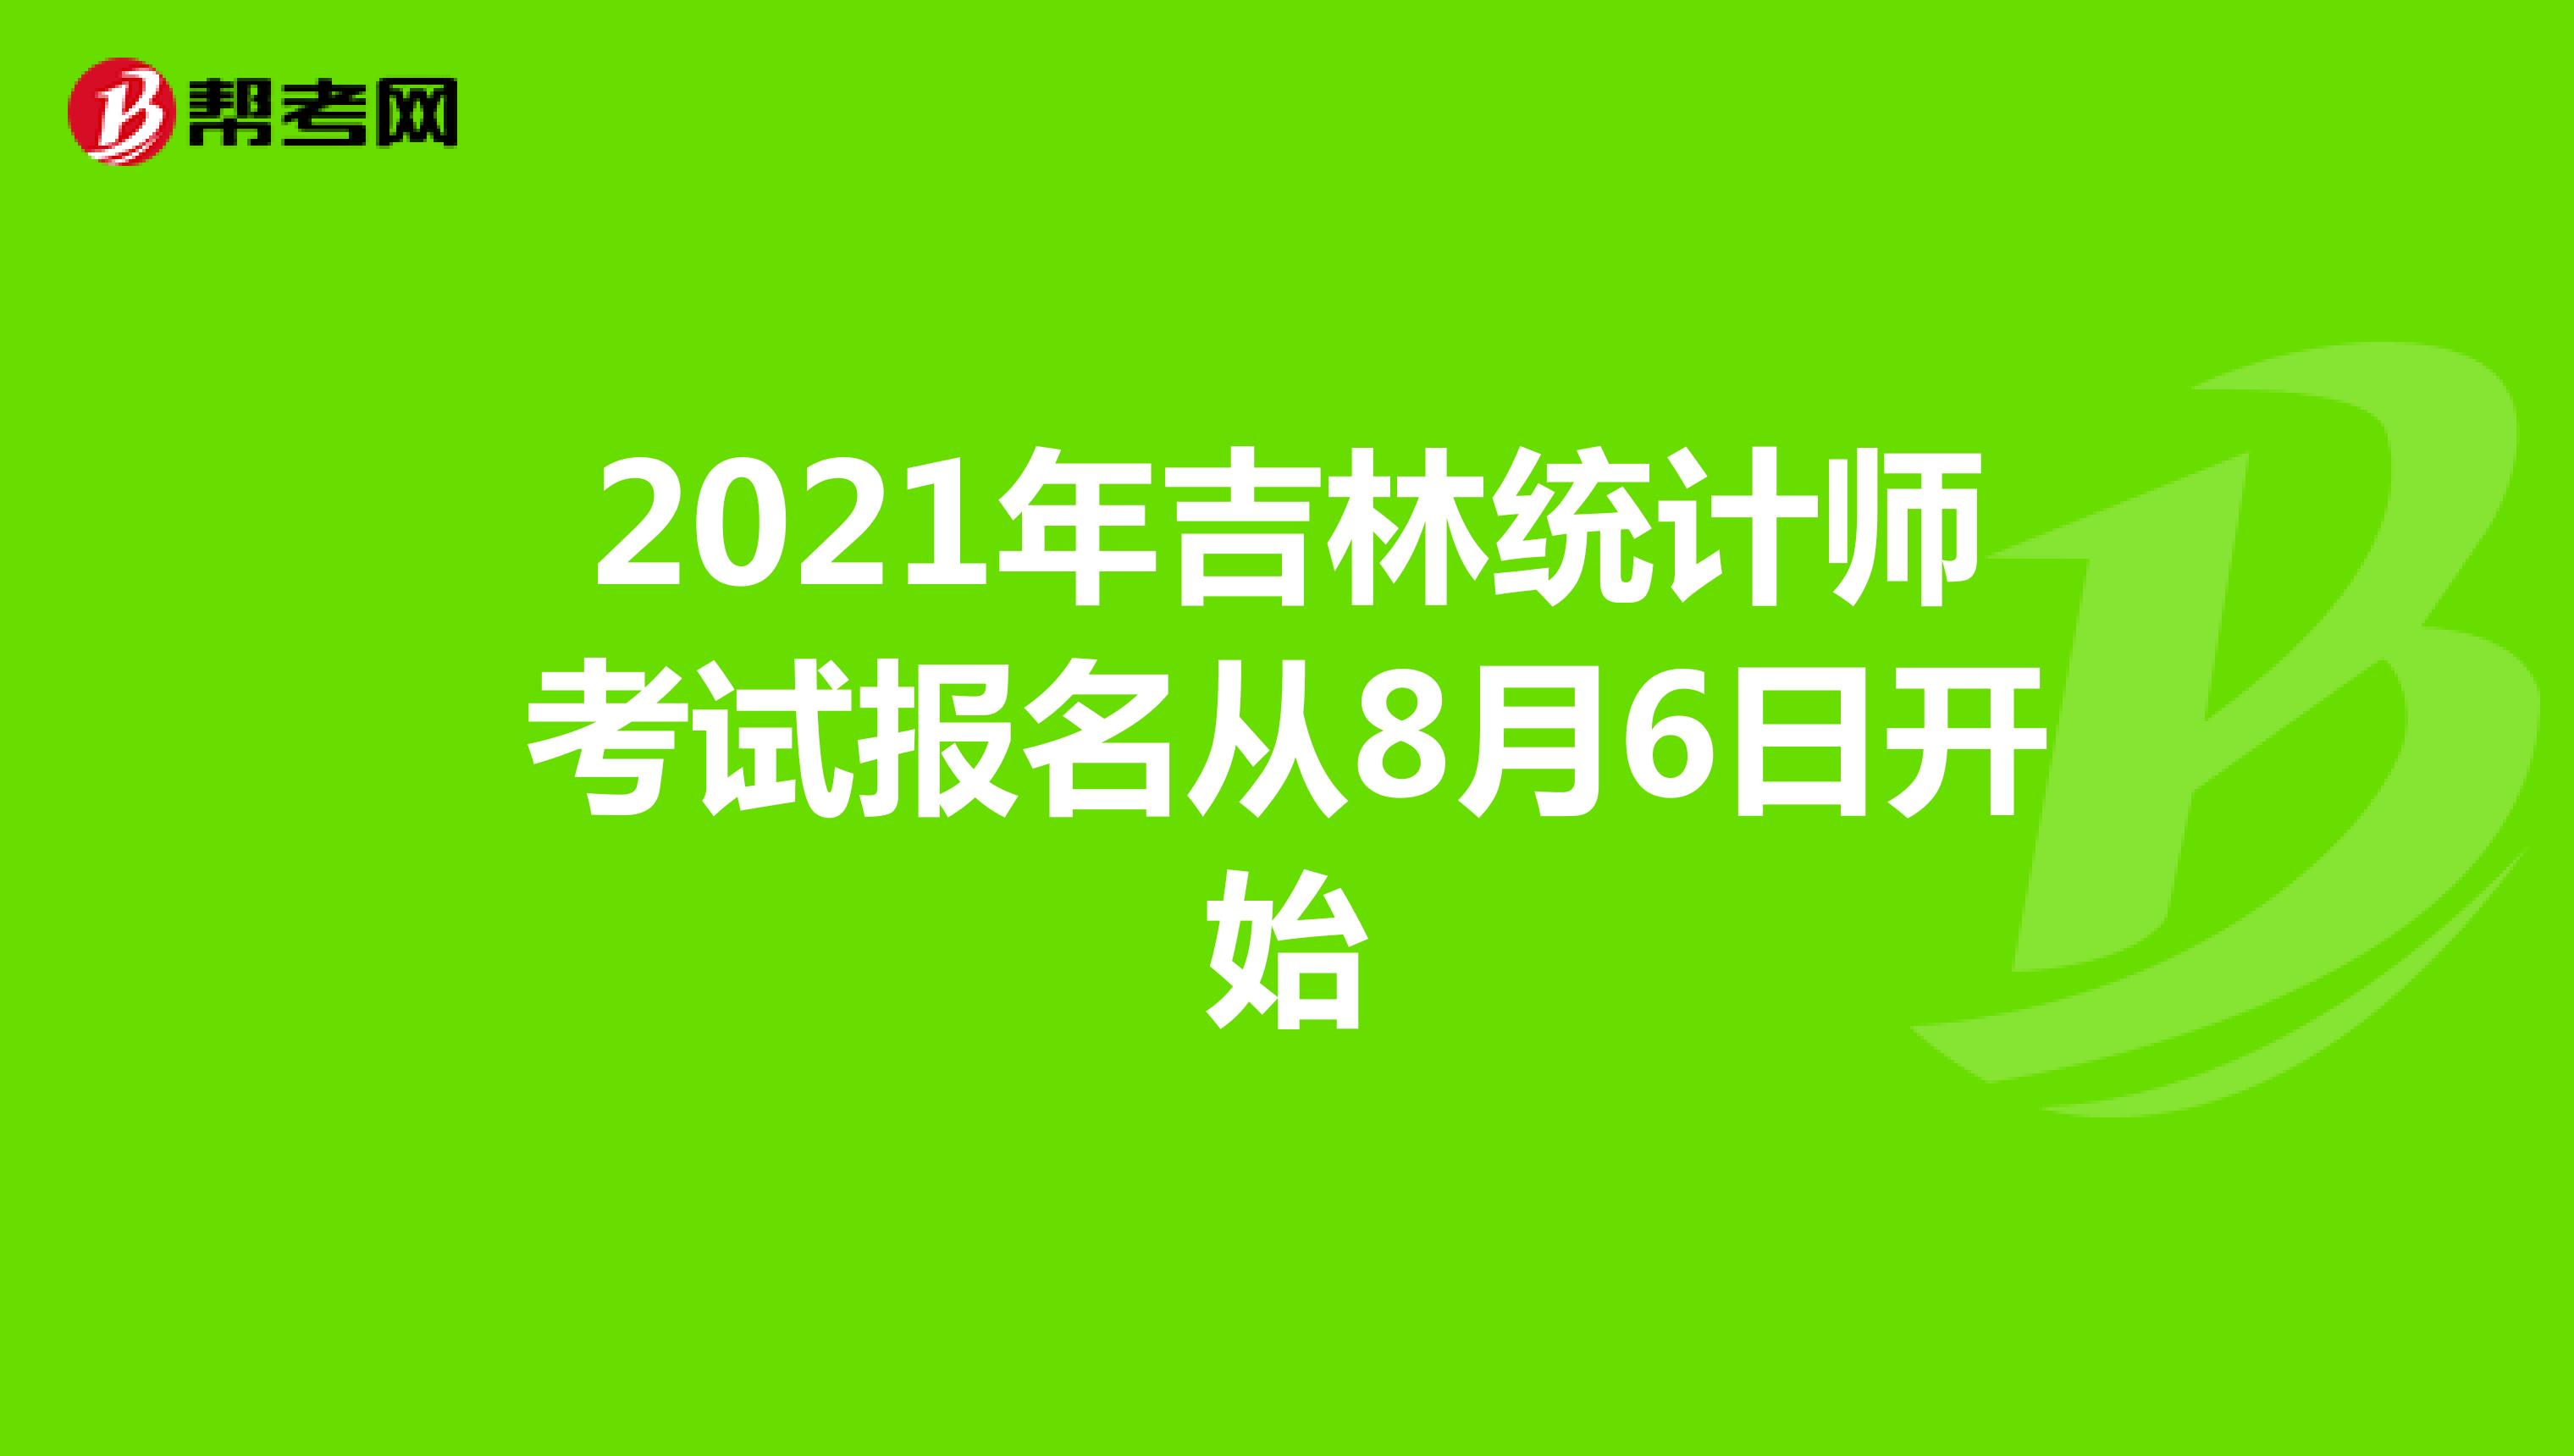 2021年吉林统计师考试报名从8月6日开始